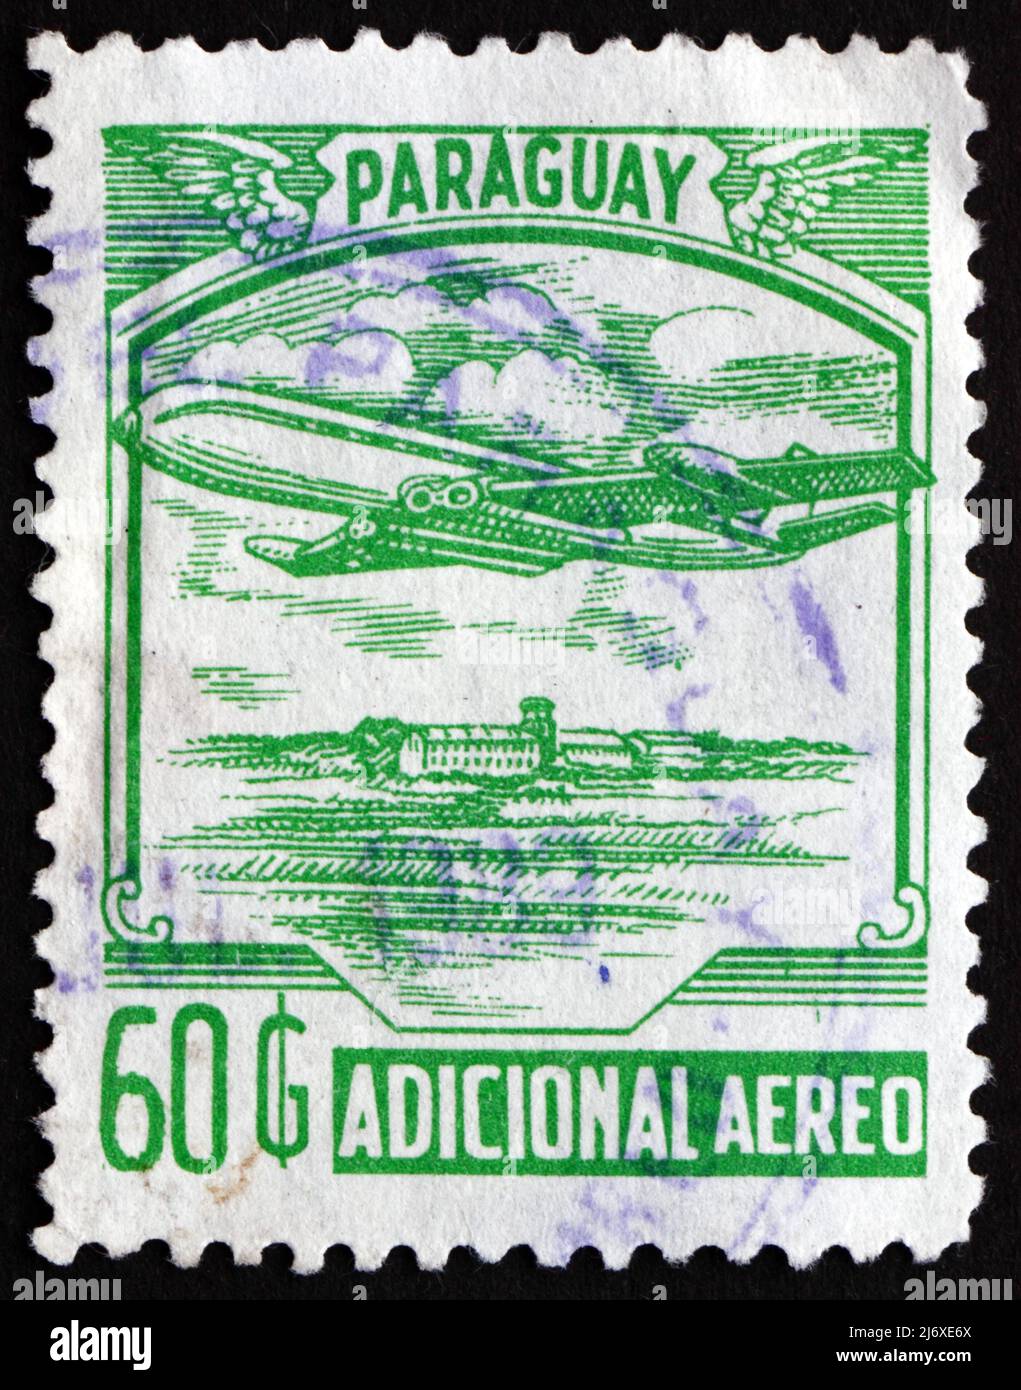 PARAGUAY - VERS 1988: Un timbre imprimé au Paraguay montre avion, vers 1988 Banque D'Images